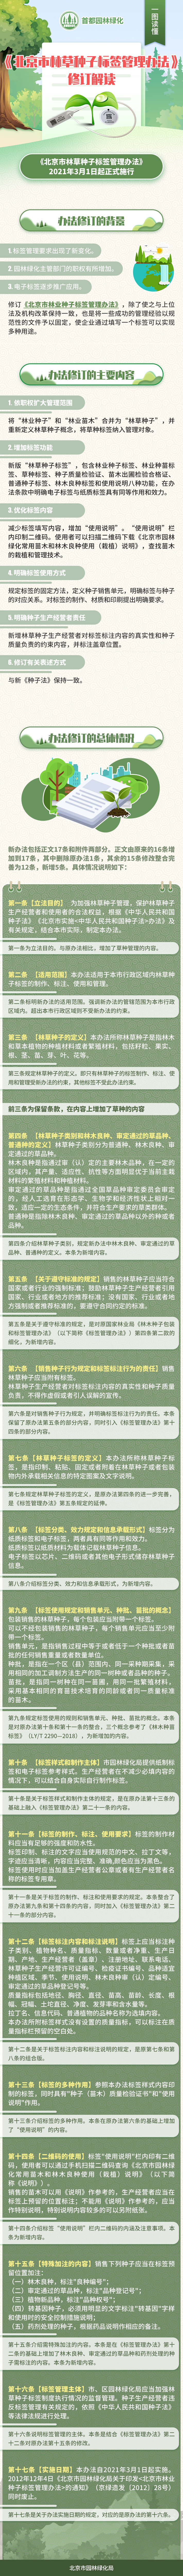 一图读懂《北京市林草种子标签管理办法》修订解读(发布日期4.21).jpg